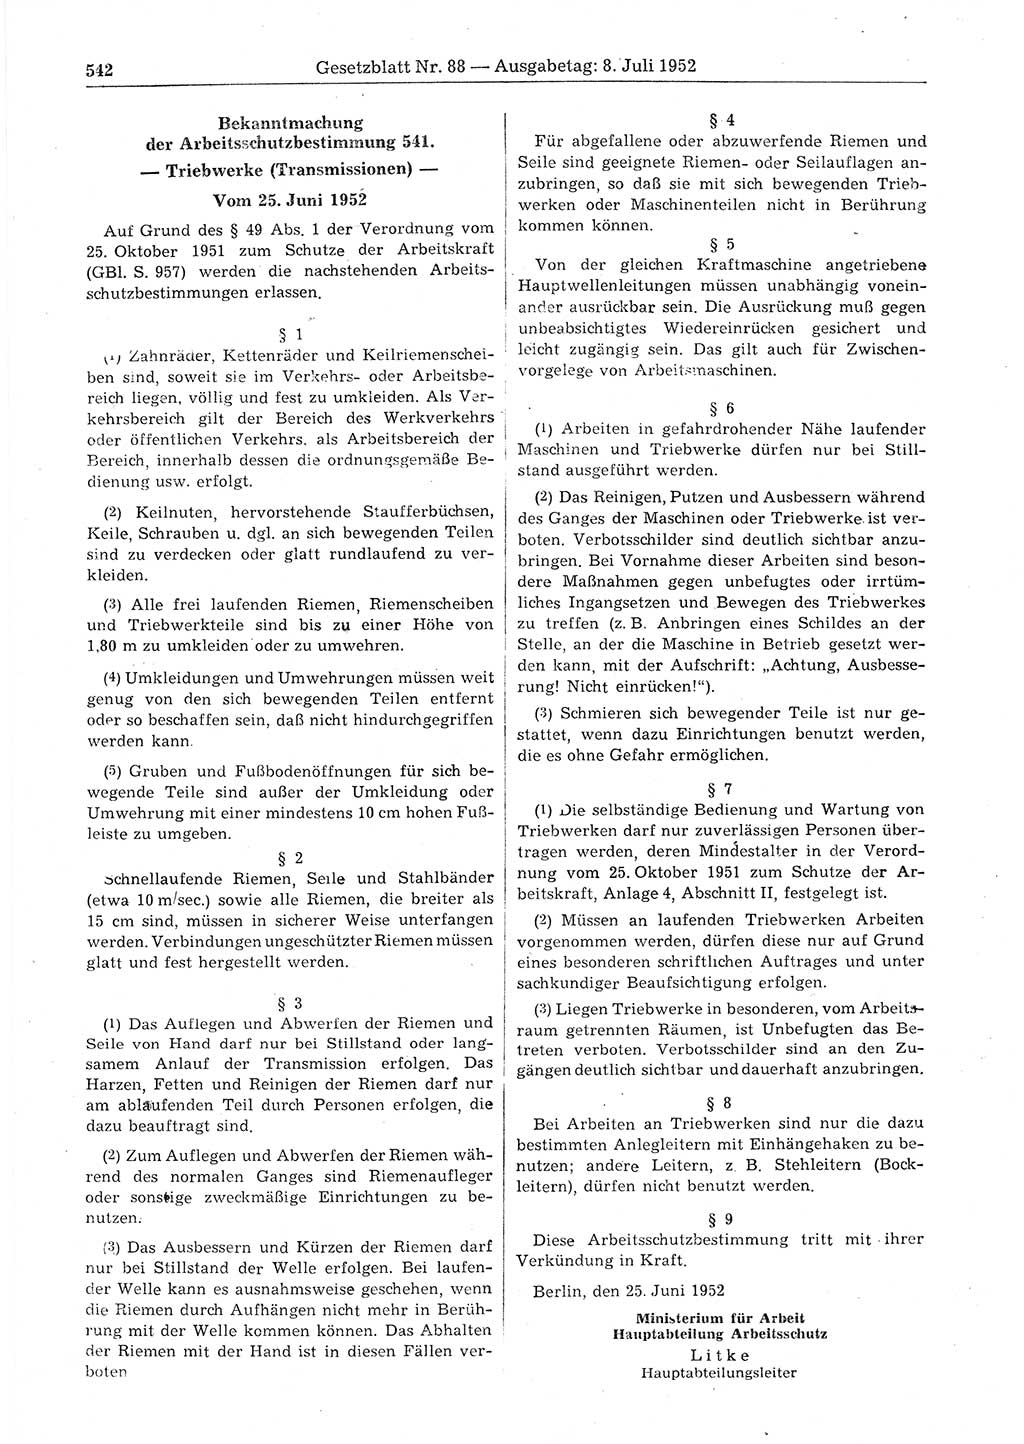 Gesetzblatt (GBl.) der Deutschen Demokratischen Republik (DDR) 1952, Seite 542 (GBl. DDR 1952, S. 542)